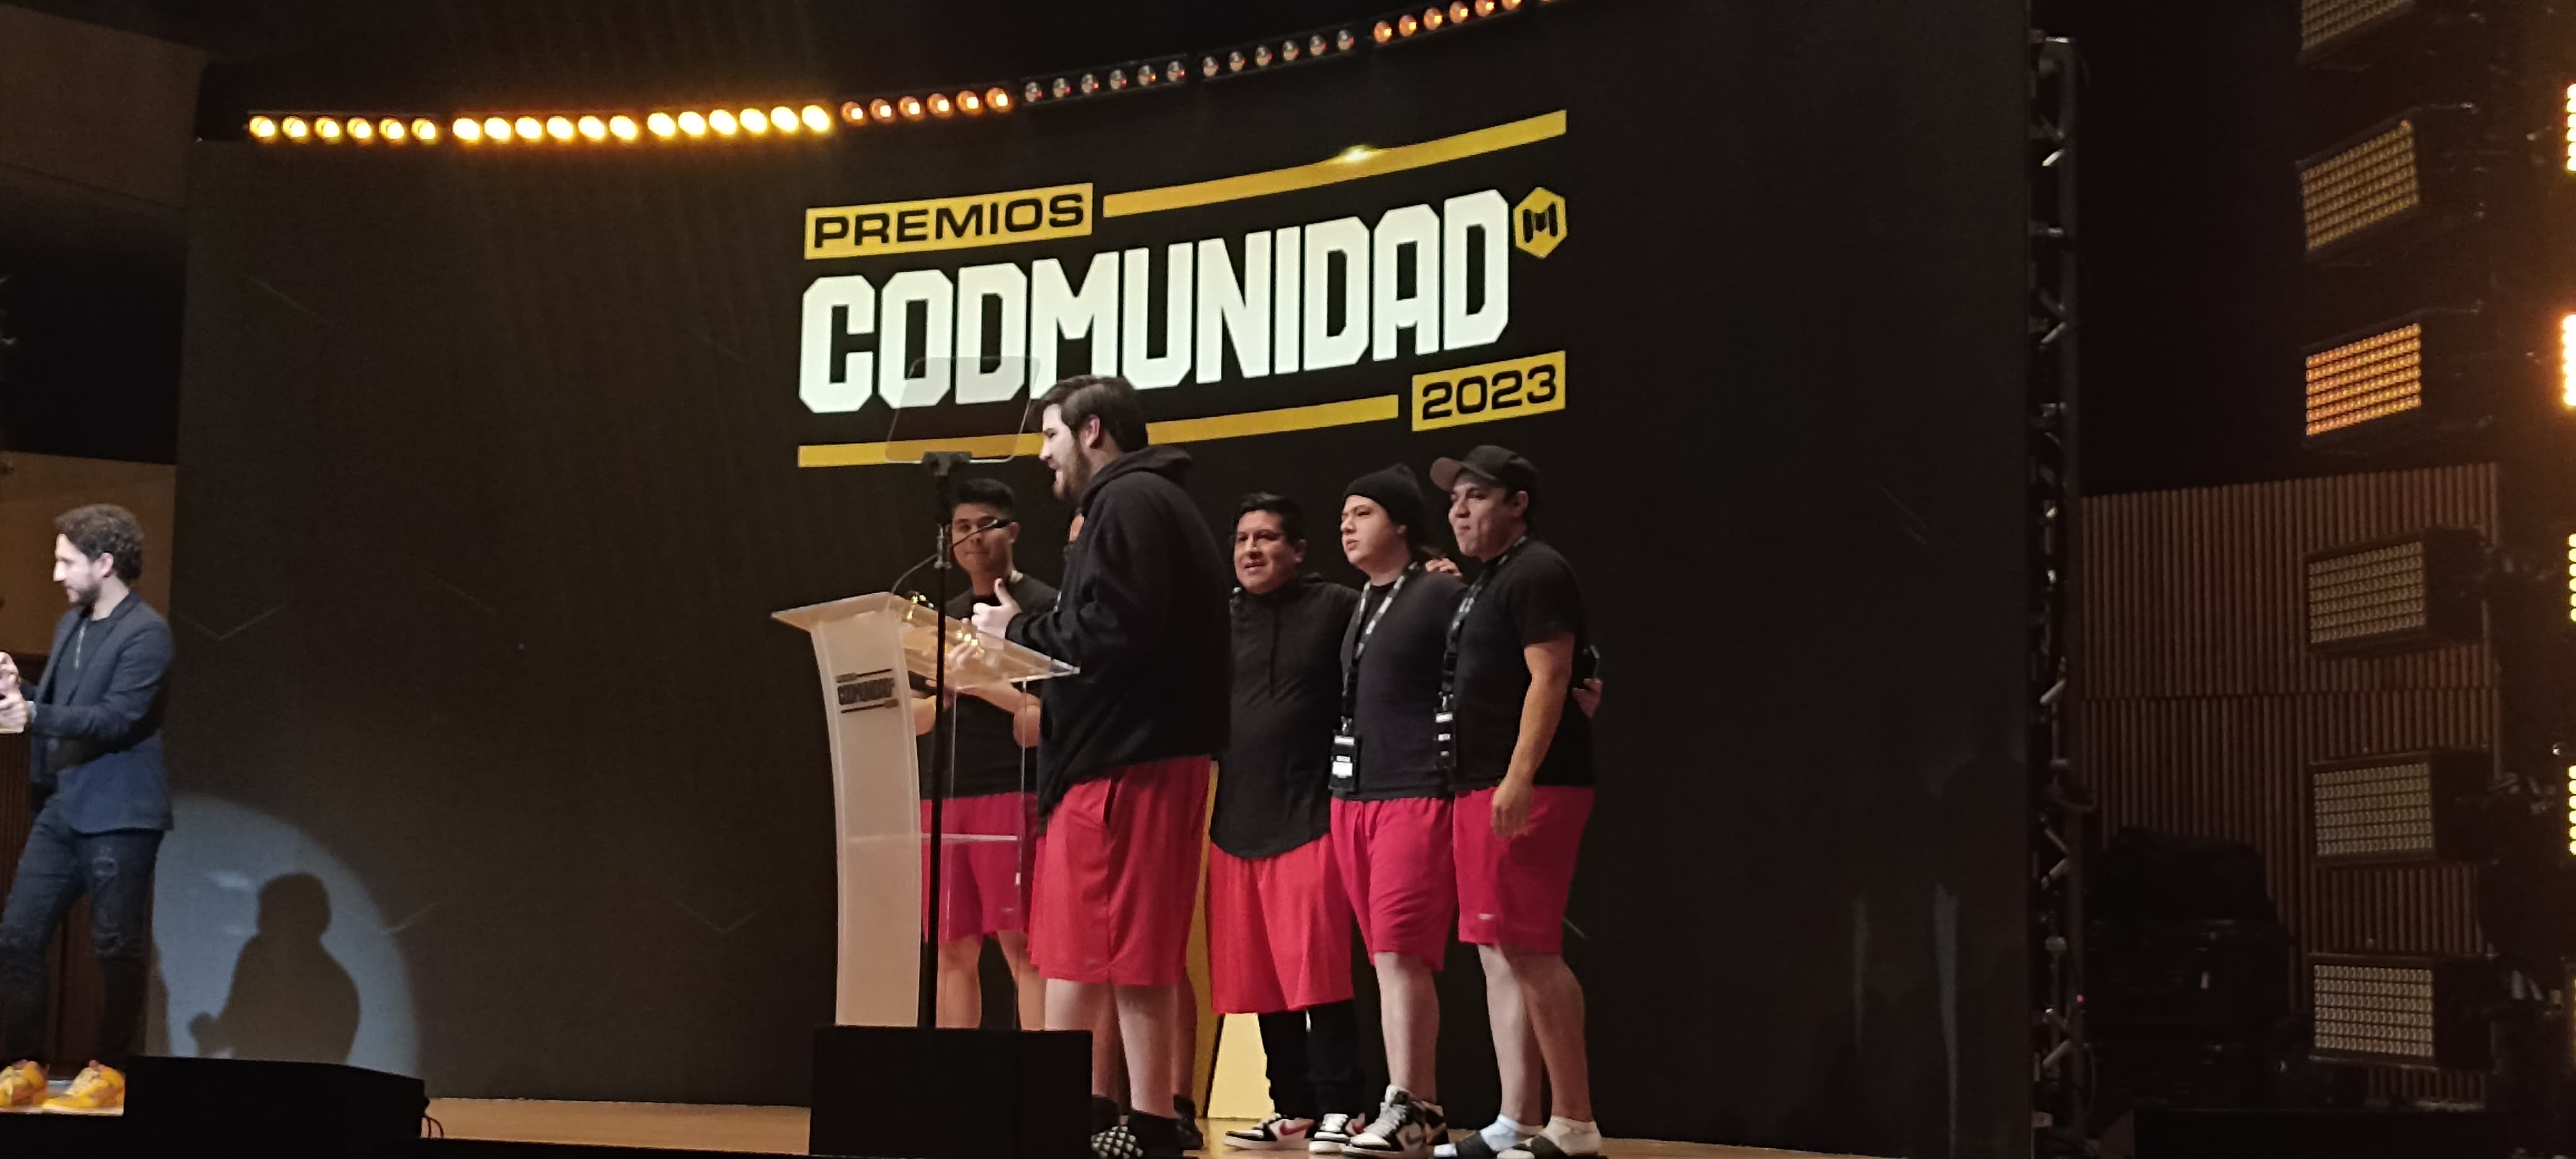 Premios CODMUNIDAD 2023 en Ciudad de México 19